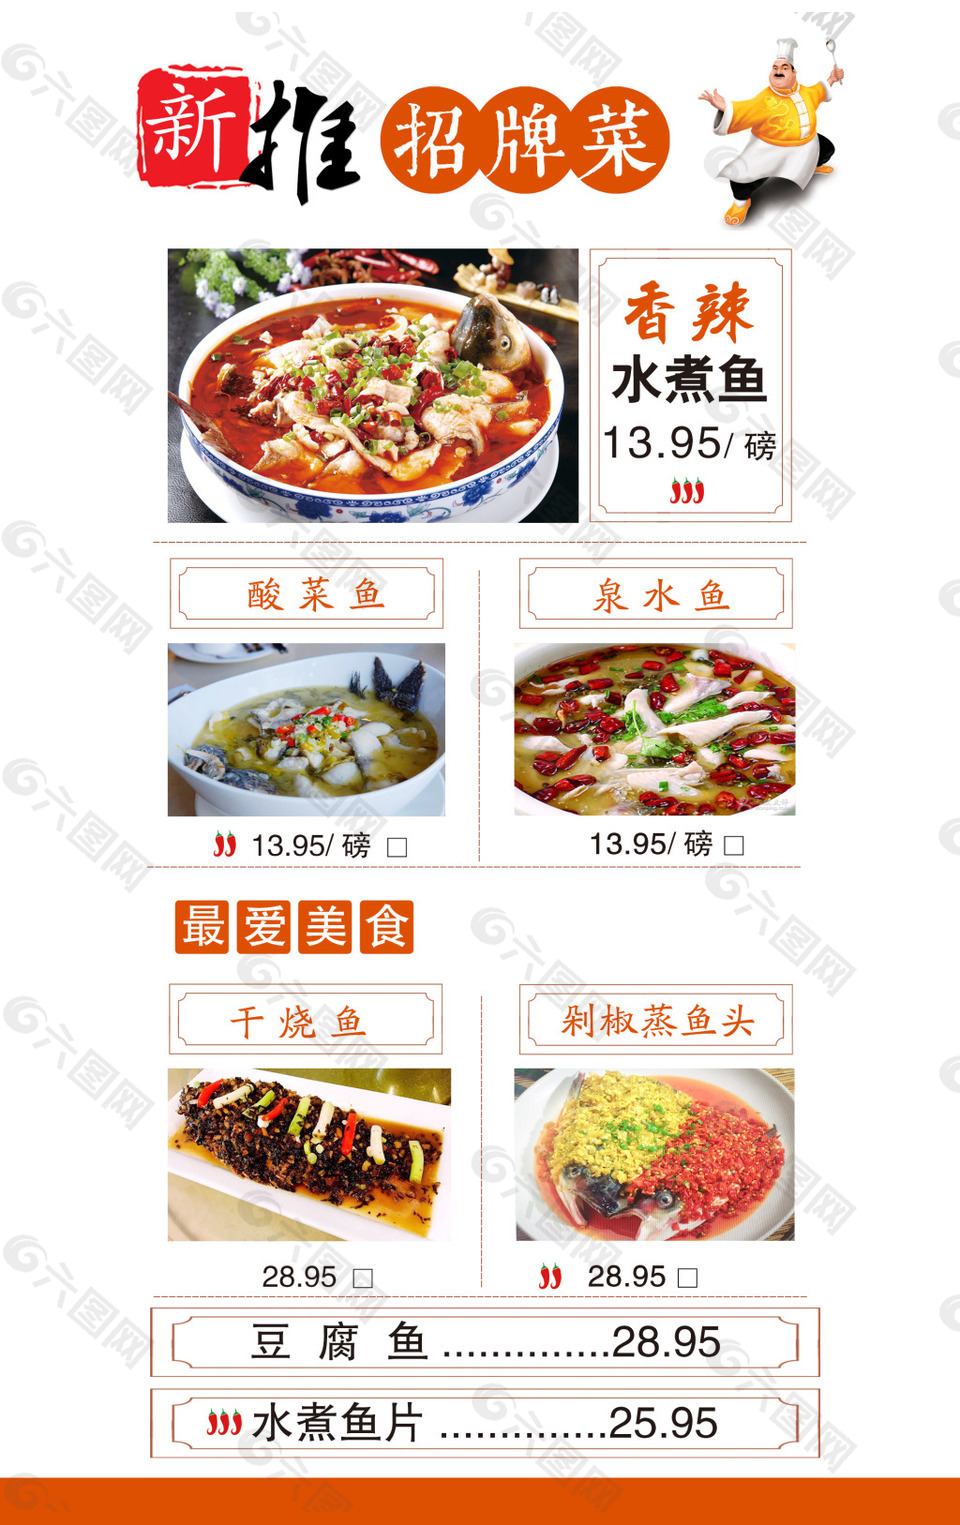 惠丰堂饭店招牌菜菜单图片